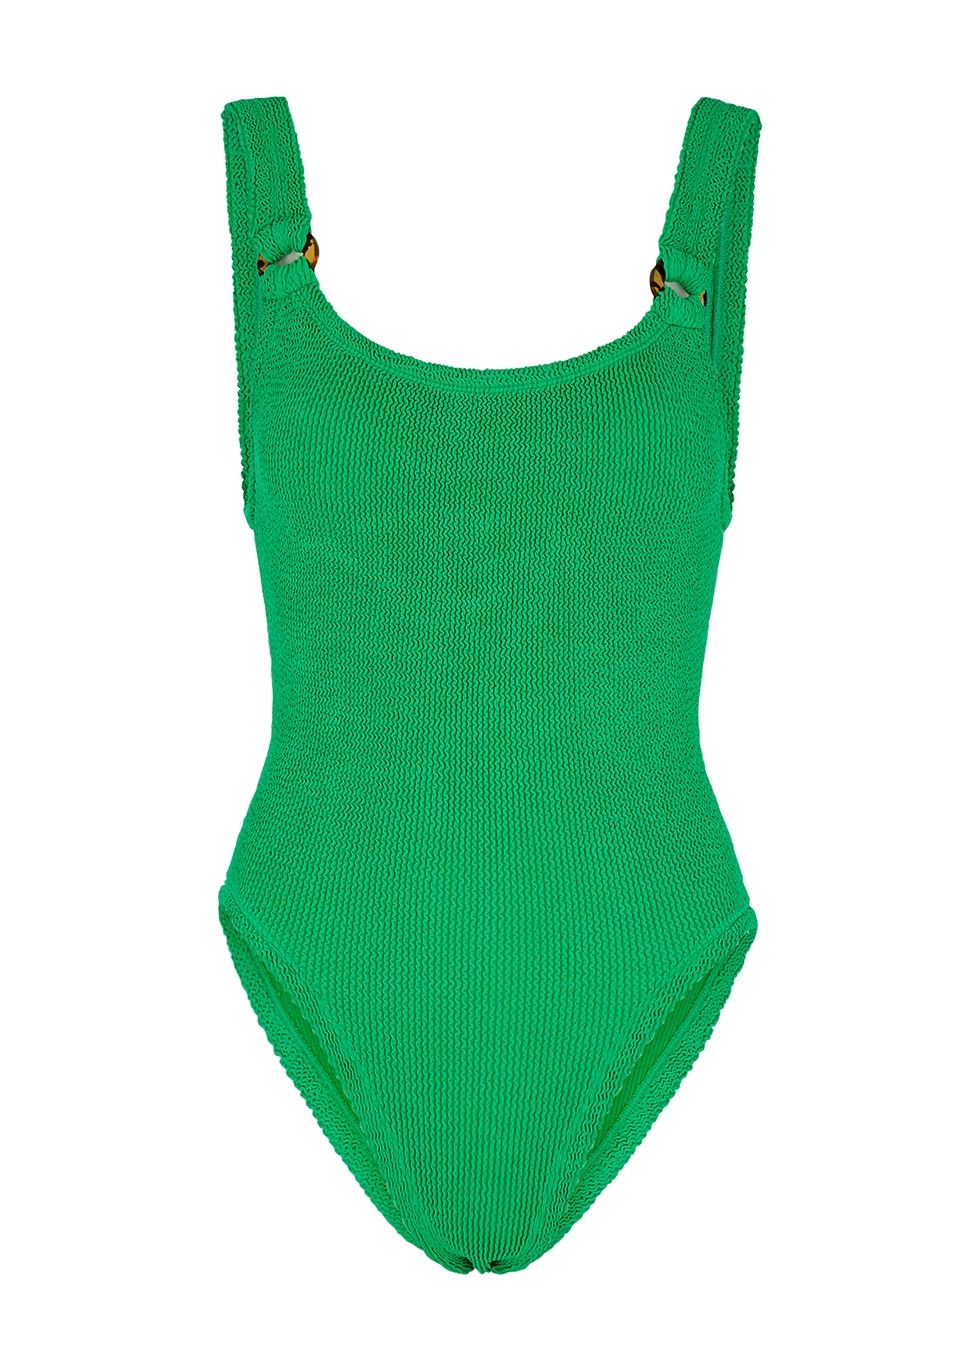 Domino seersucker swimsuit | Harvey Nichols (Global)